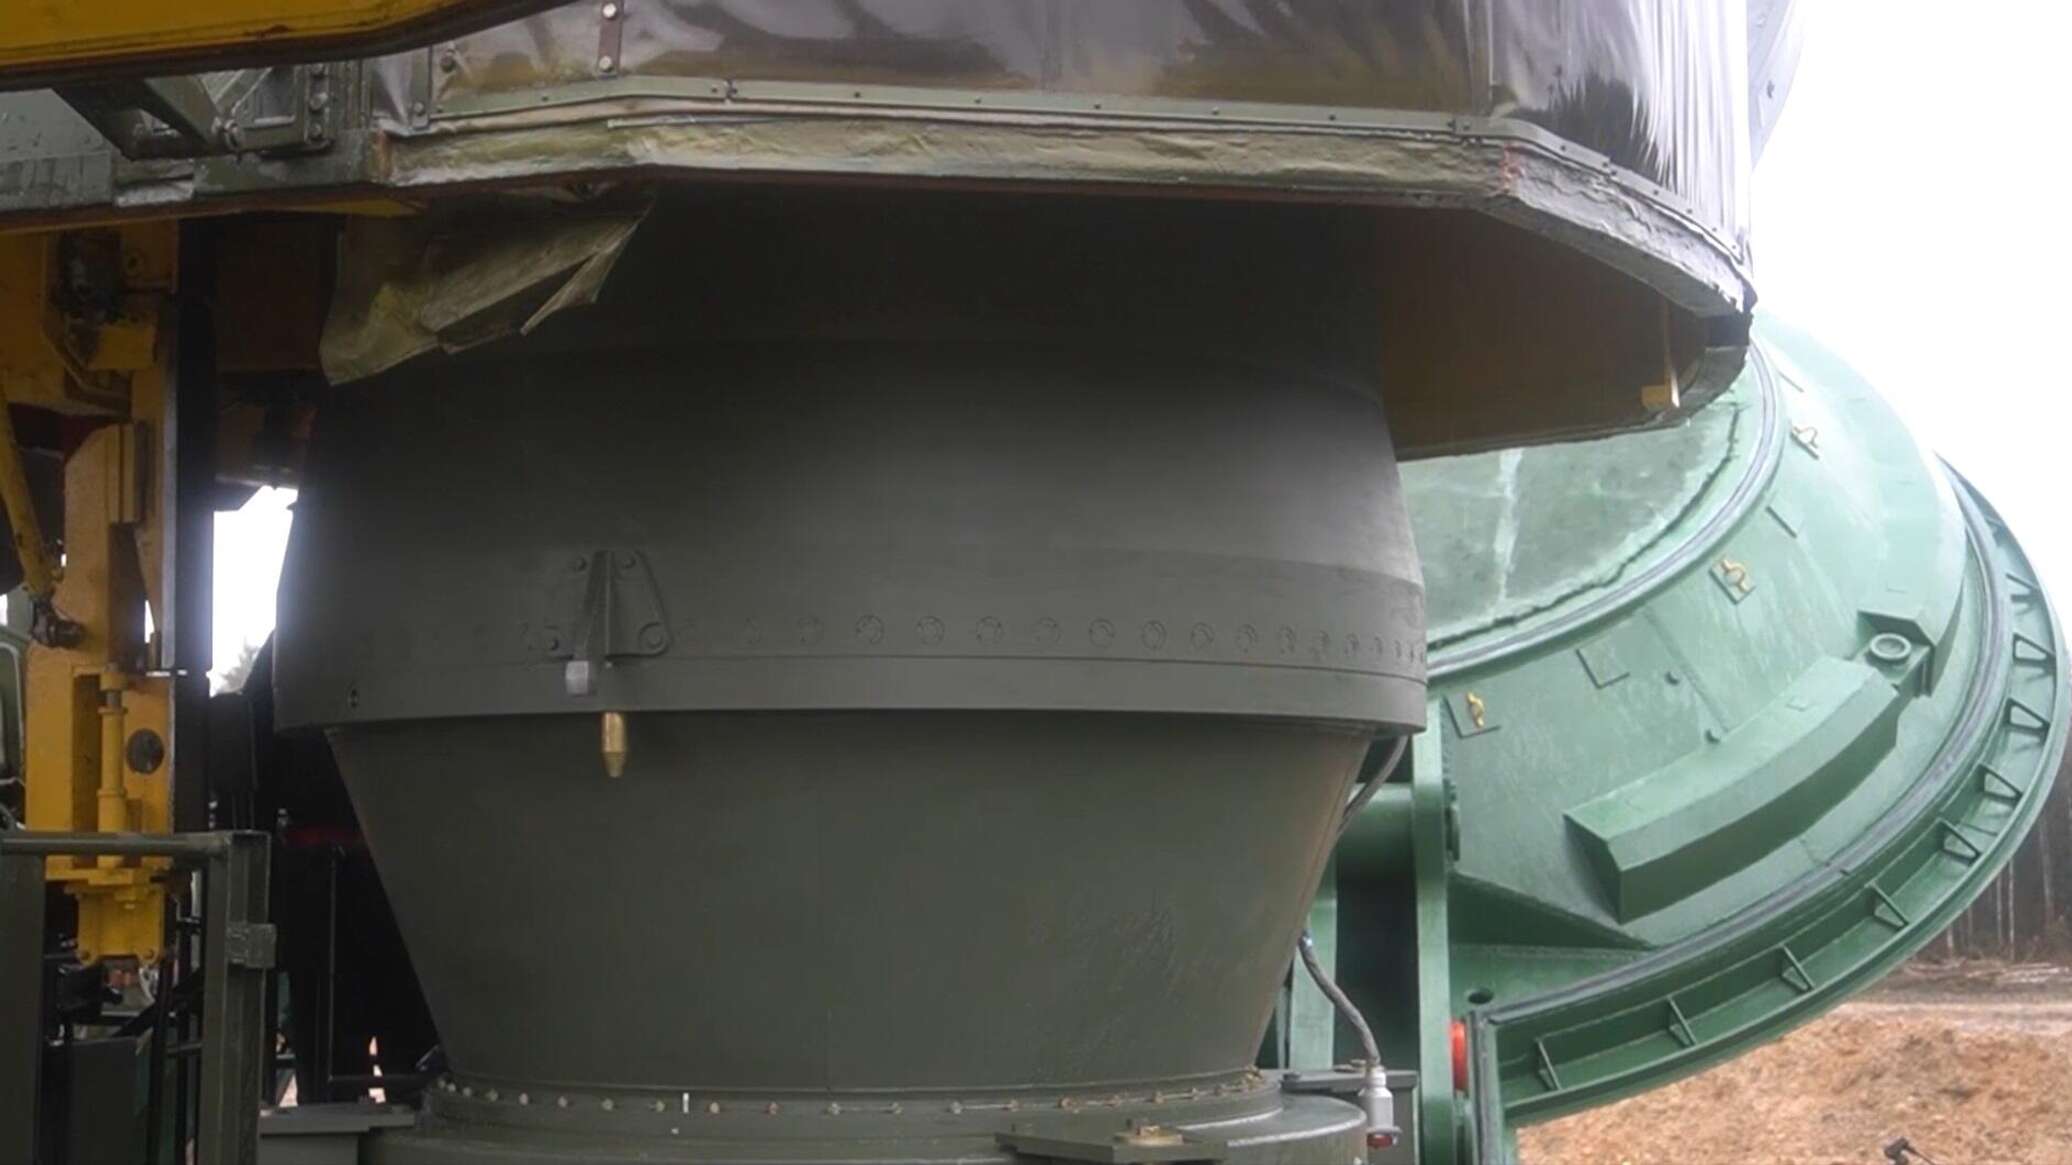 وضع صواريخ "يارس" العابرة للقارات لأول مرة بشكل ثابت داخل صوامع قاعدة كوزلسكي الروسية... فيديو